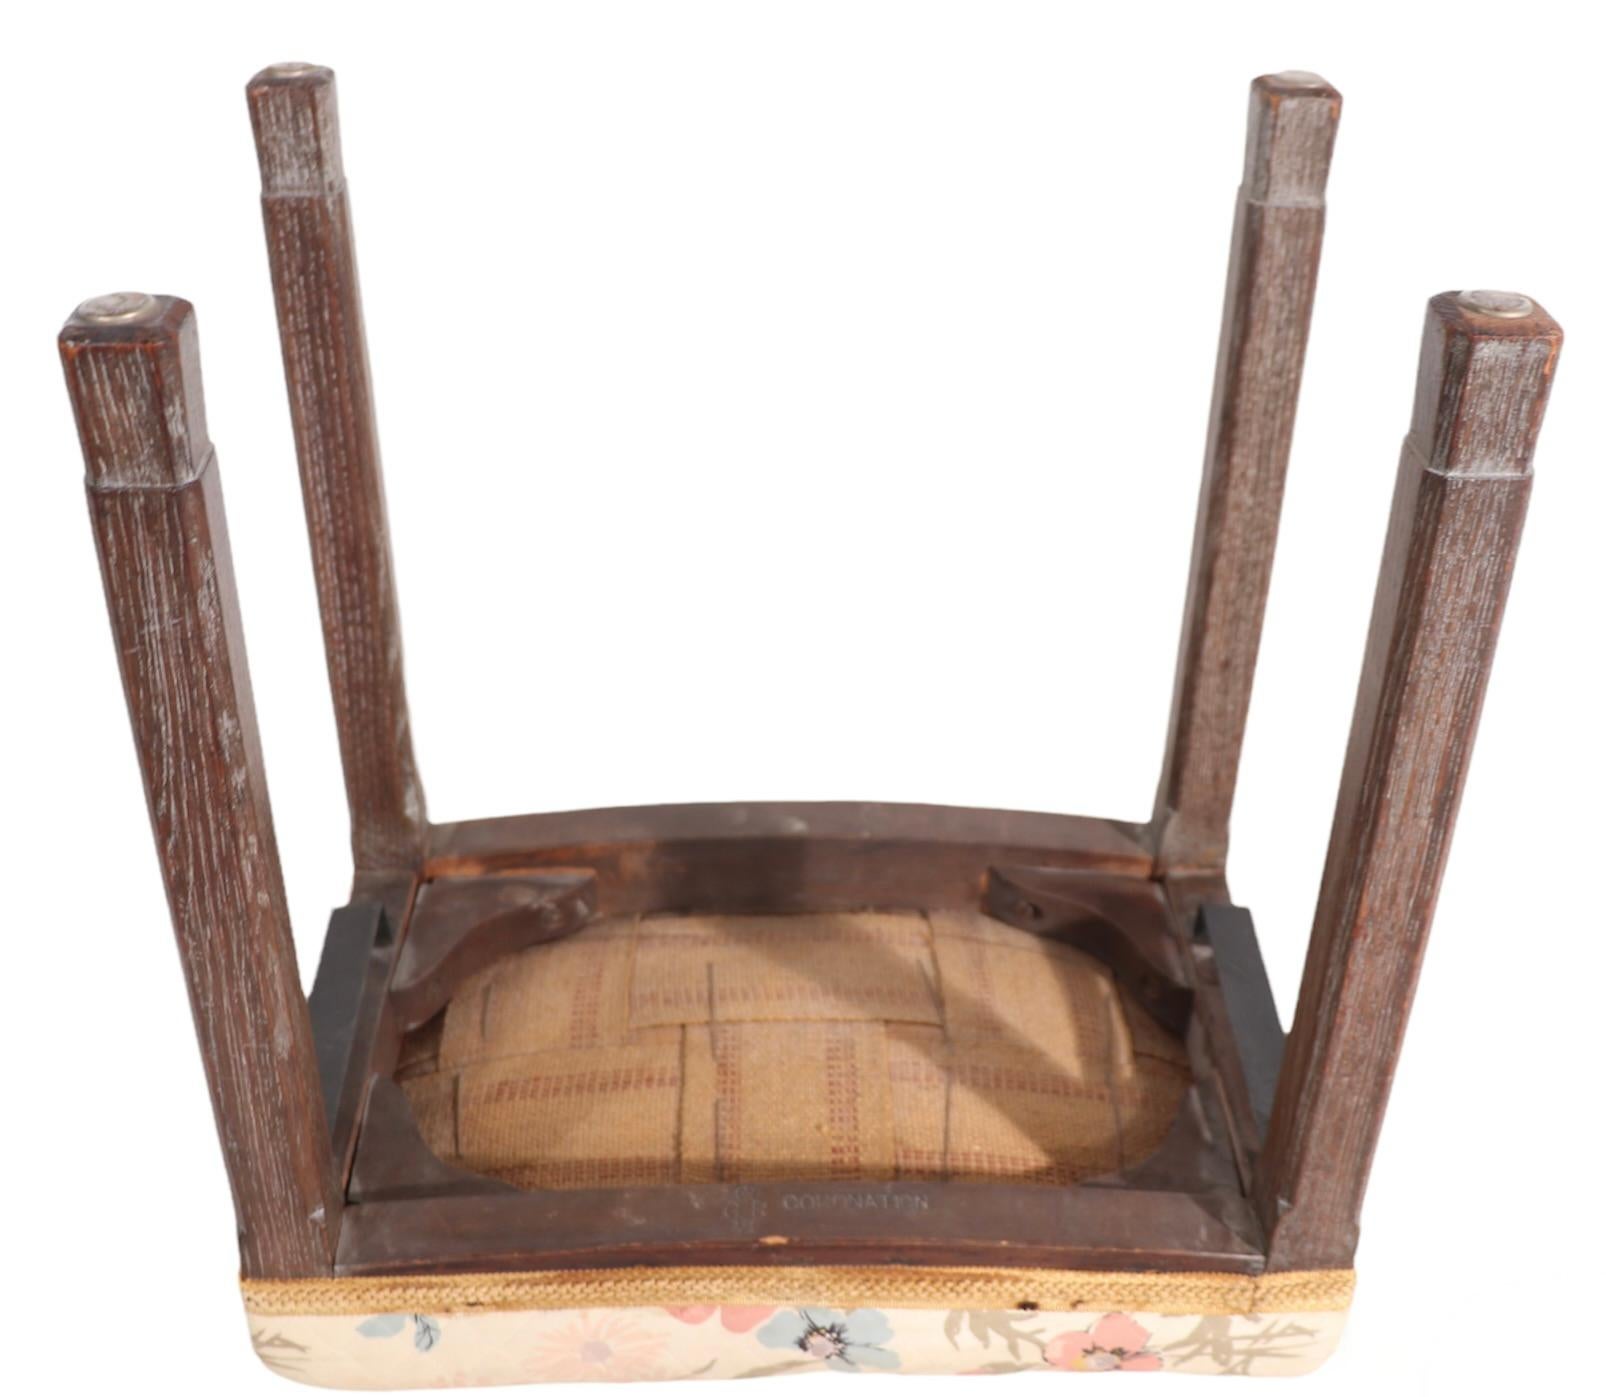 coronation stool 1953 value